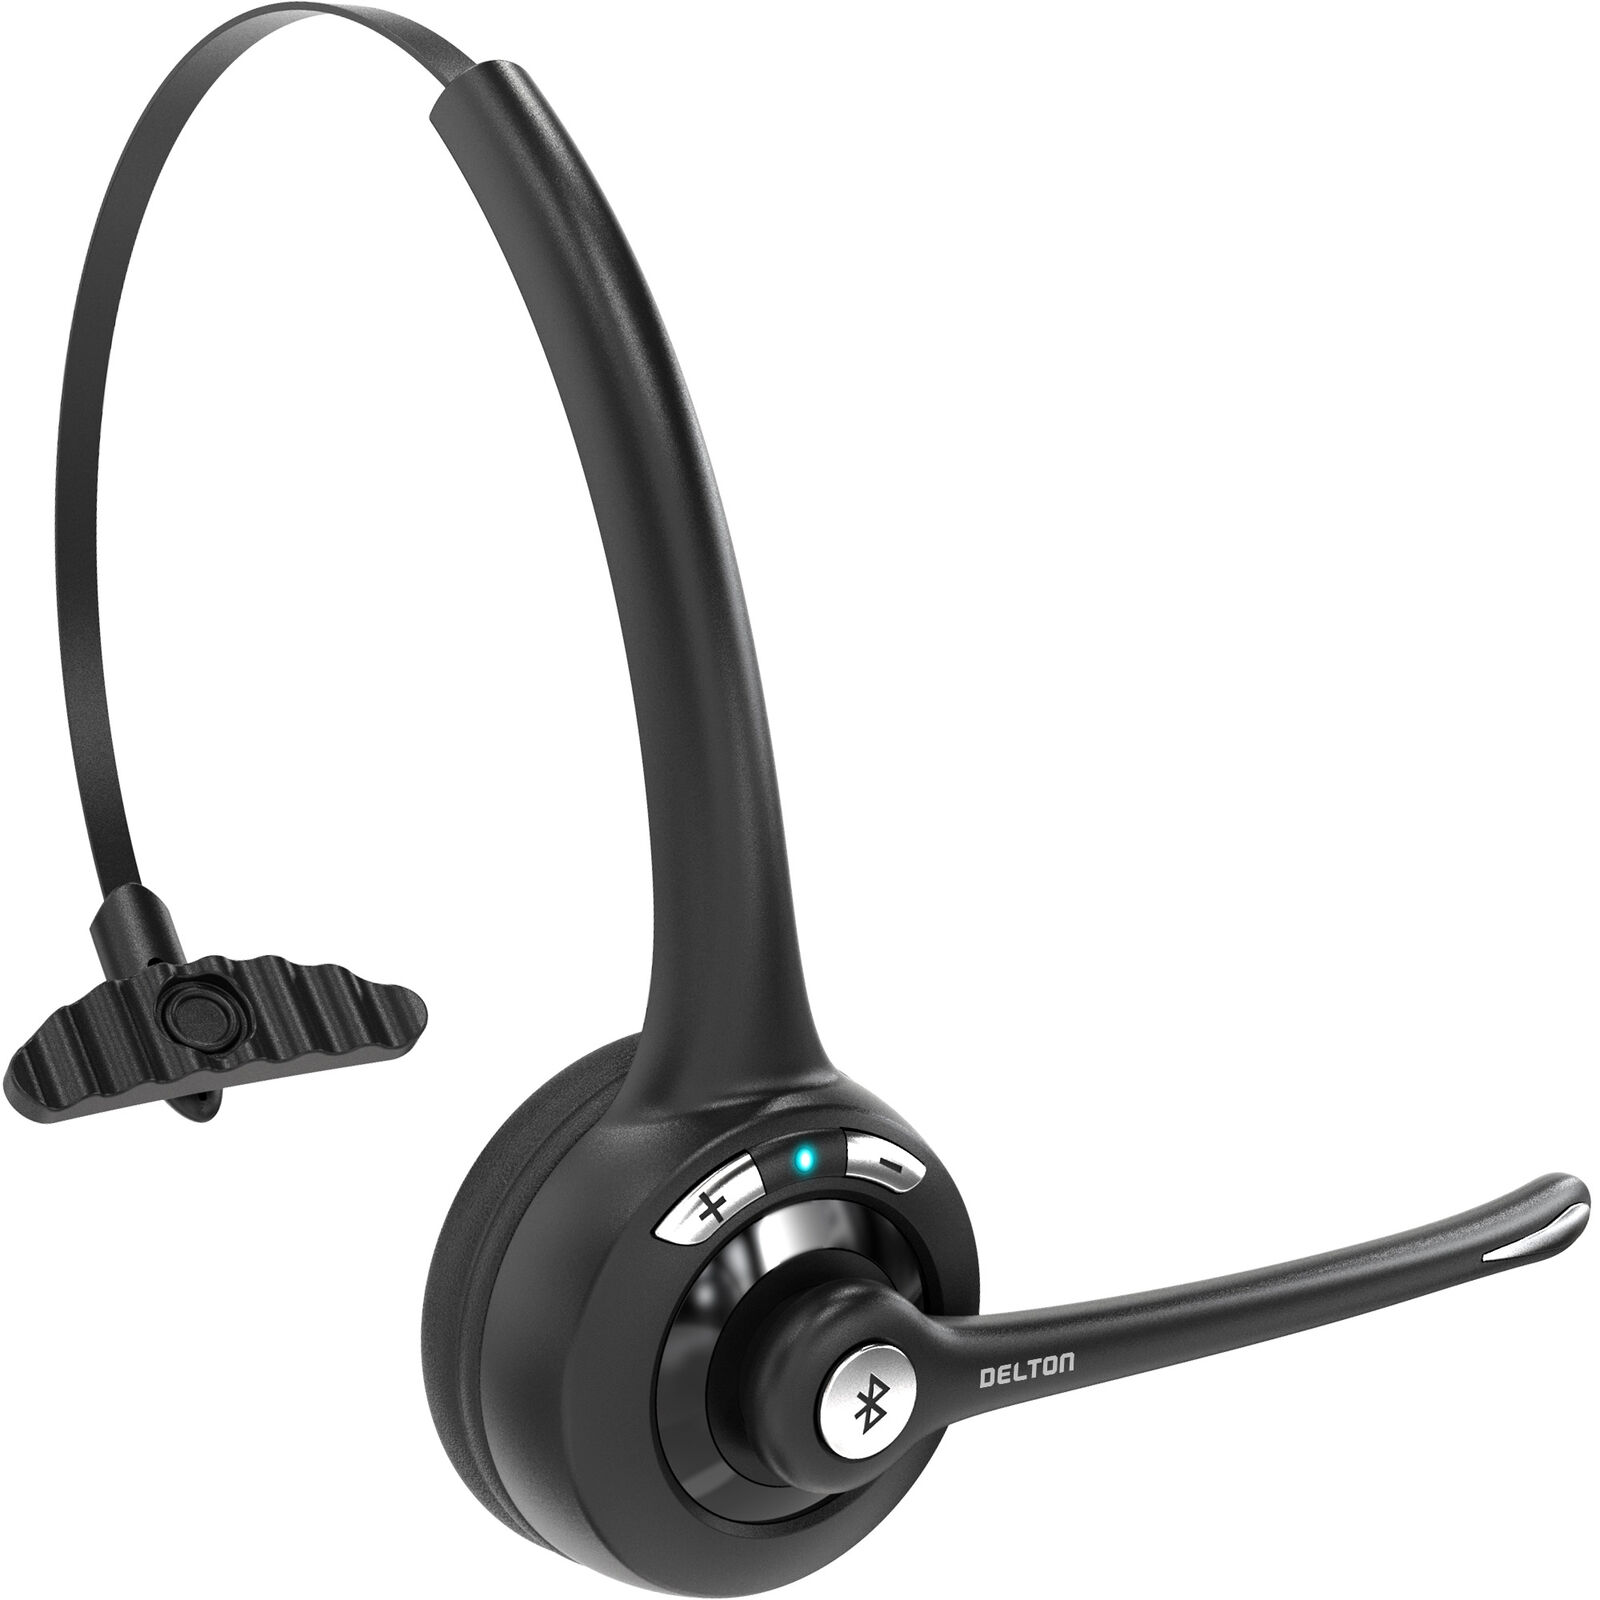 Delton Trucker Bluetooth Headset, Wireless Headset w/Microphone